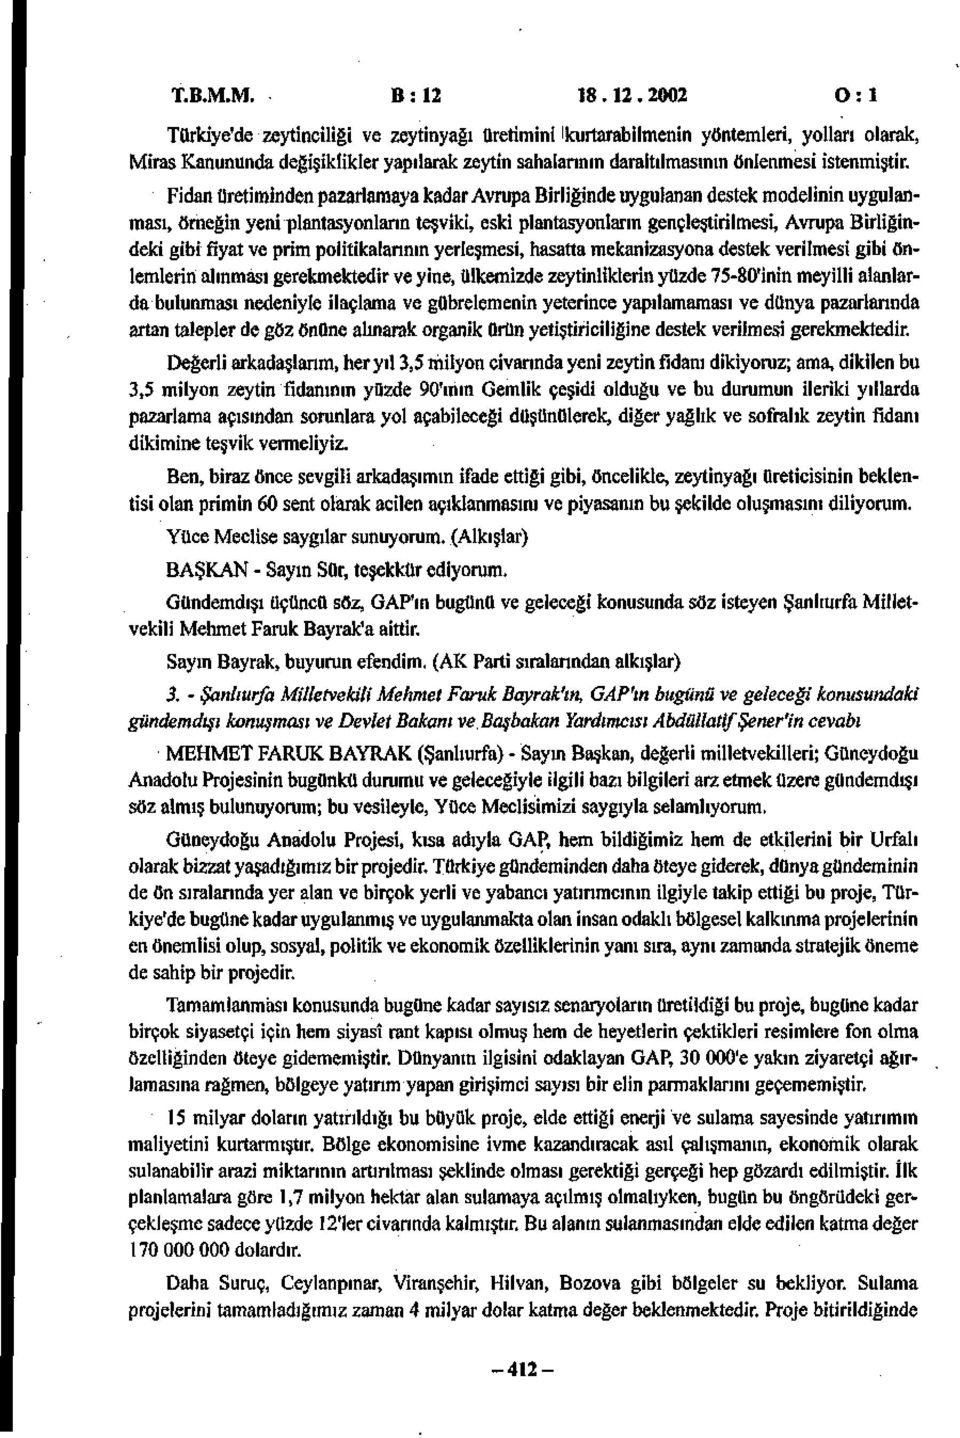 2002 O : 1 Türkiye'de zeytinciliği ve zeytinyağı üretimini i kurtarabilmenin yöntemleri, yolları olarak, Miras Kanununda değişiklikler yapılarak zeytin sahalarının daraltılmasının önlenmesi